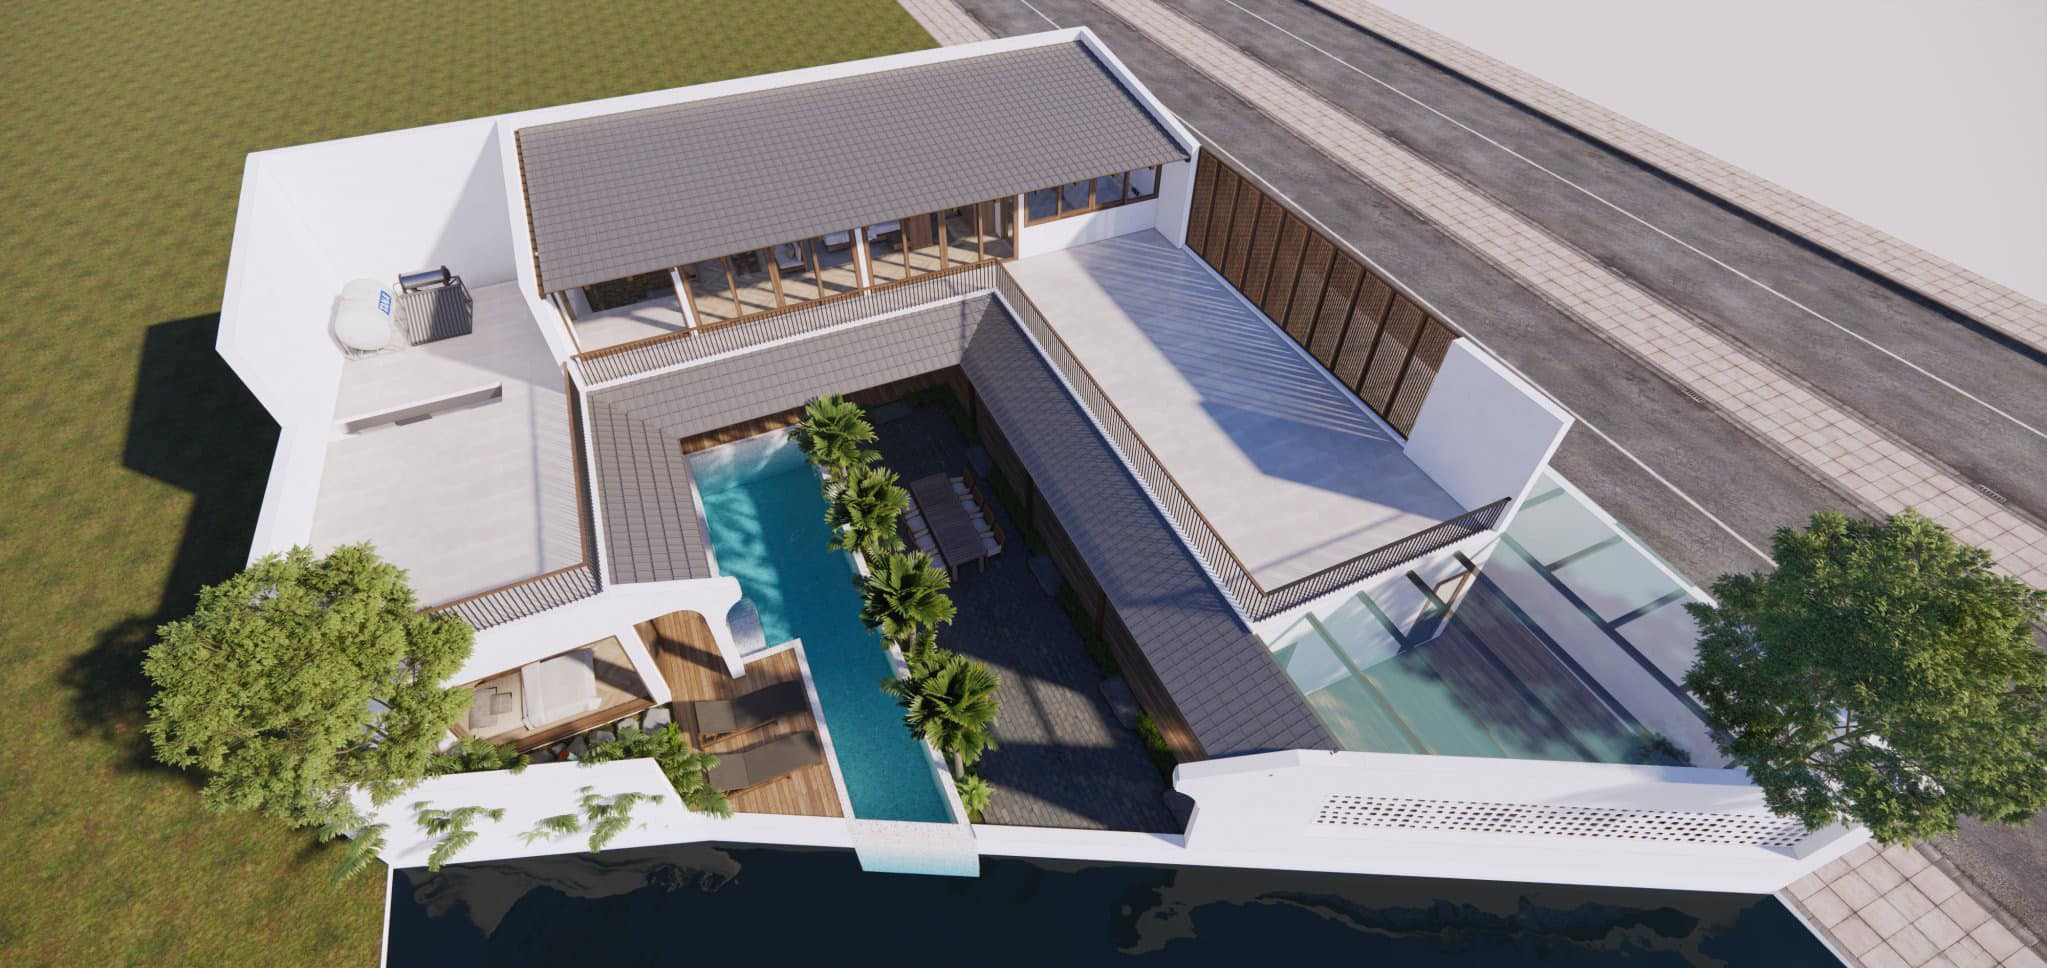 ngoi nha 1100 - Ngôi nhà ven hồ ở Vinh thiết kế không gian mở, phòng ngủ hướng ra bể bơi trong lành